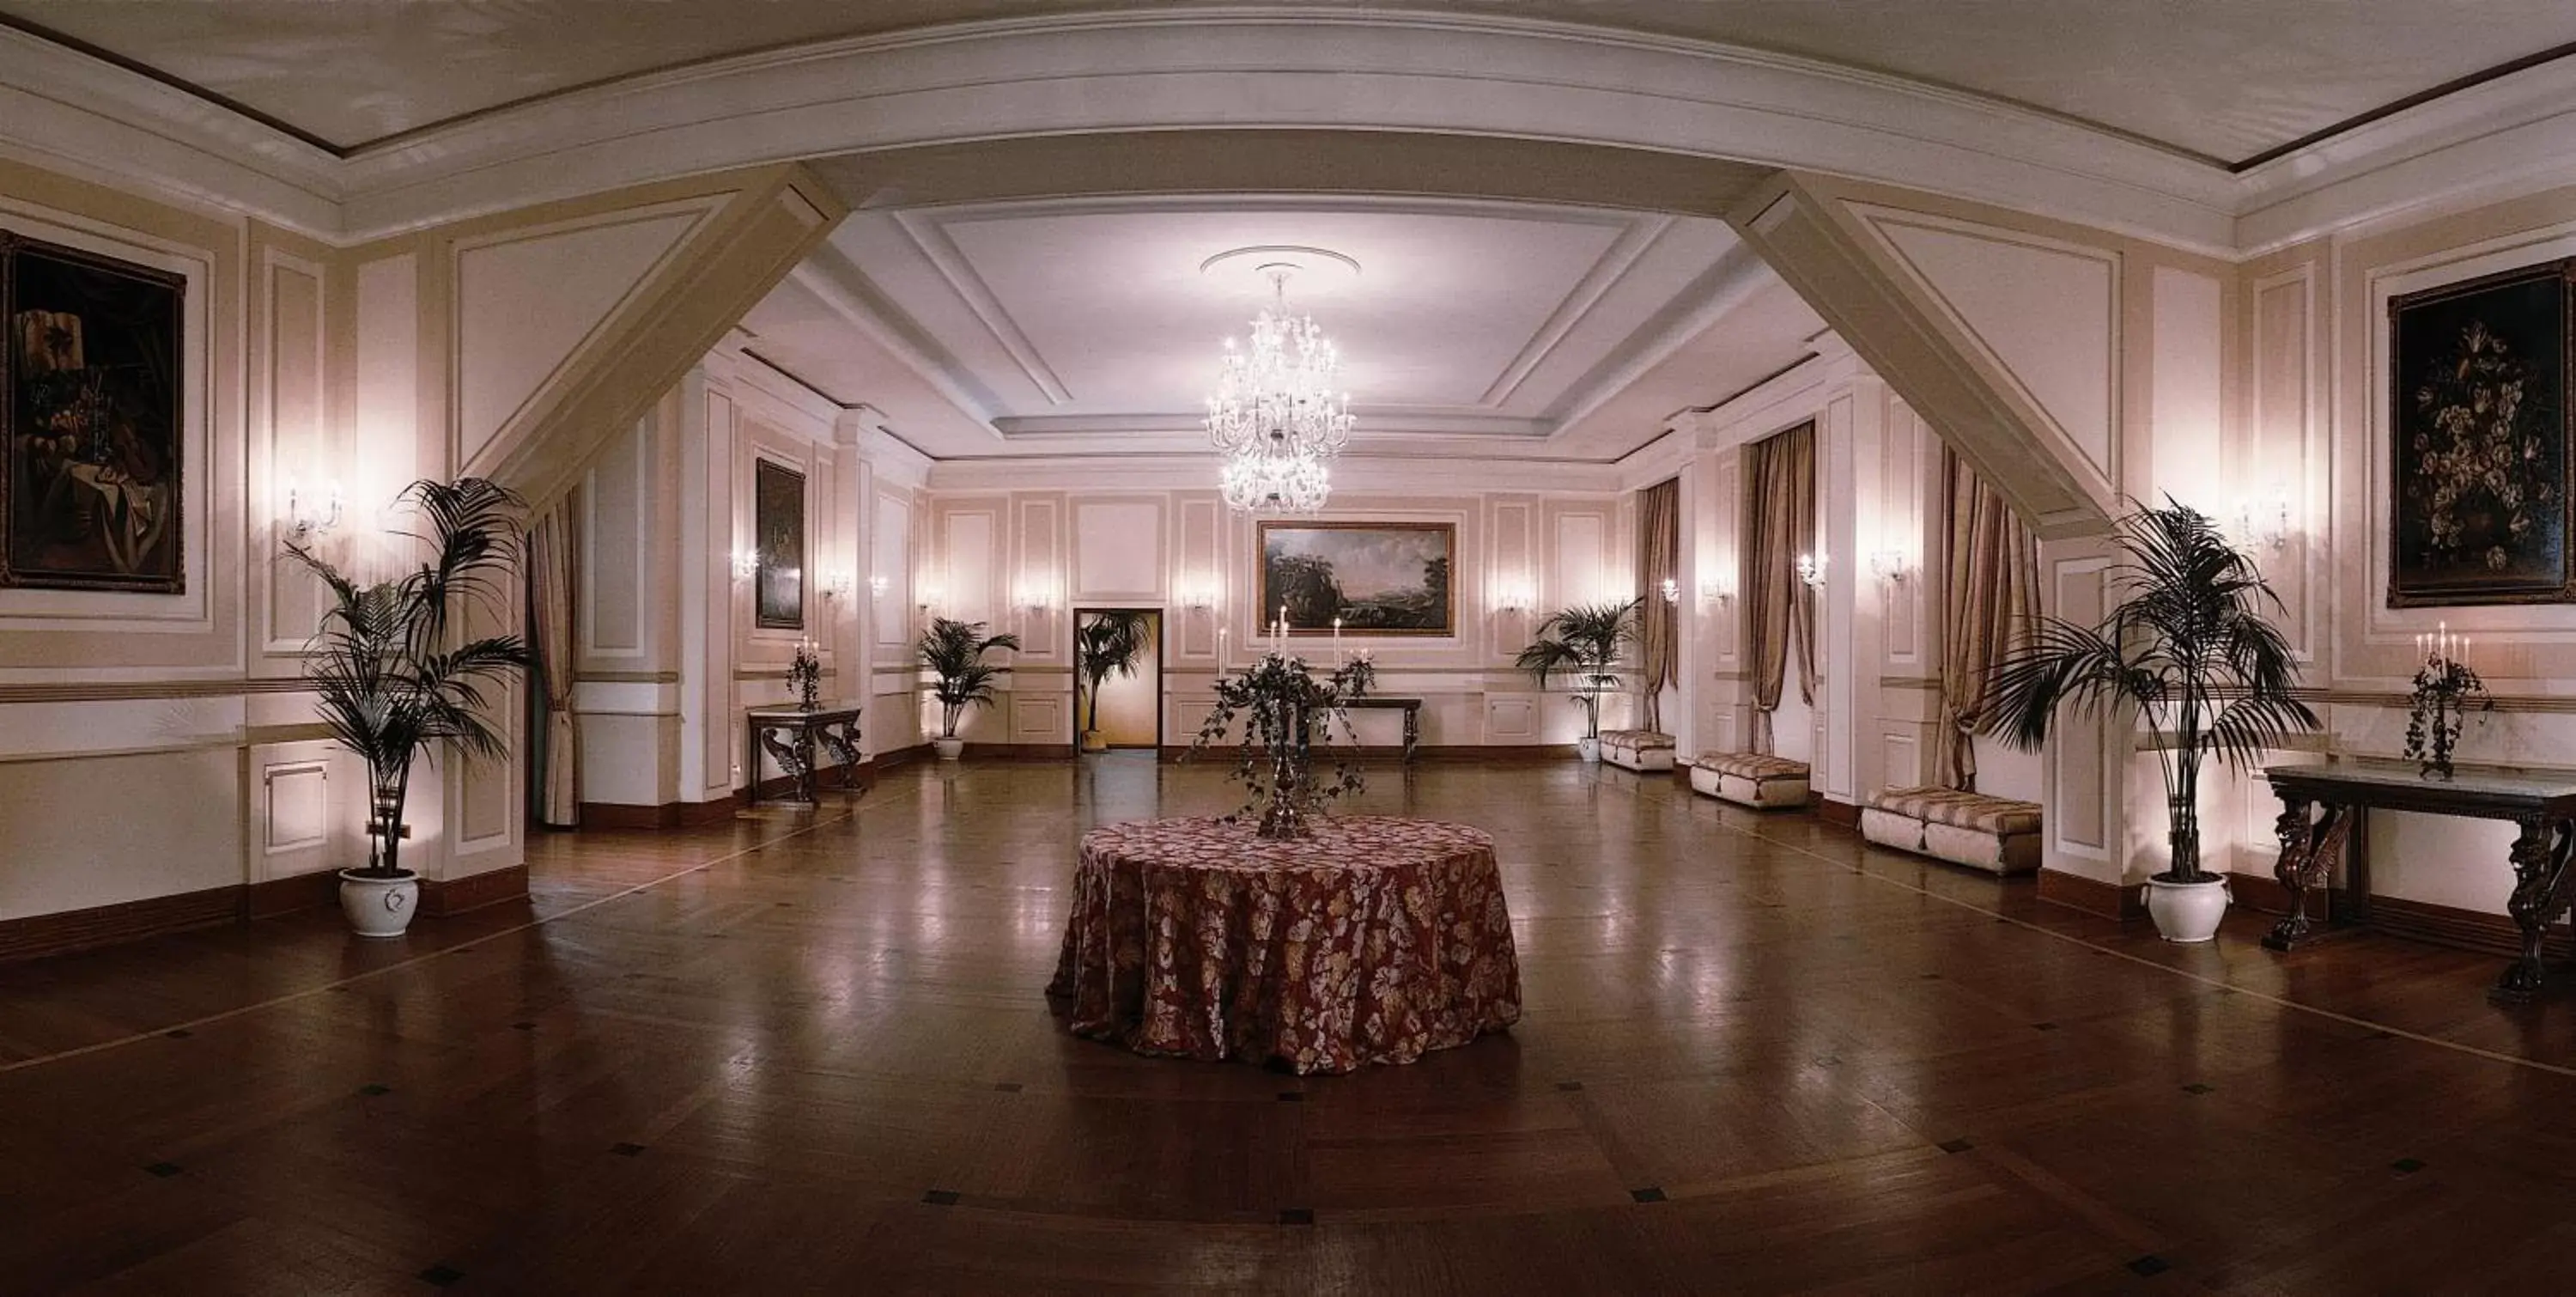 Lobby or reception, Banquet Facilities in Grand Hotel Vesuvio